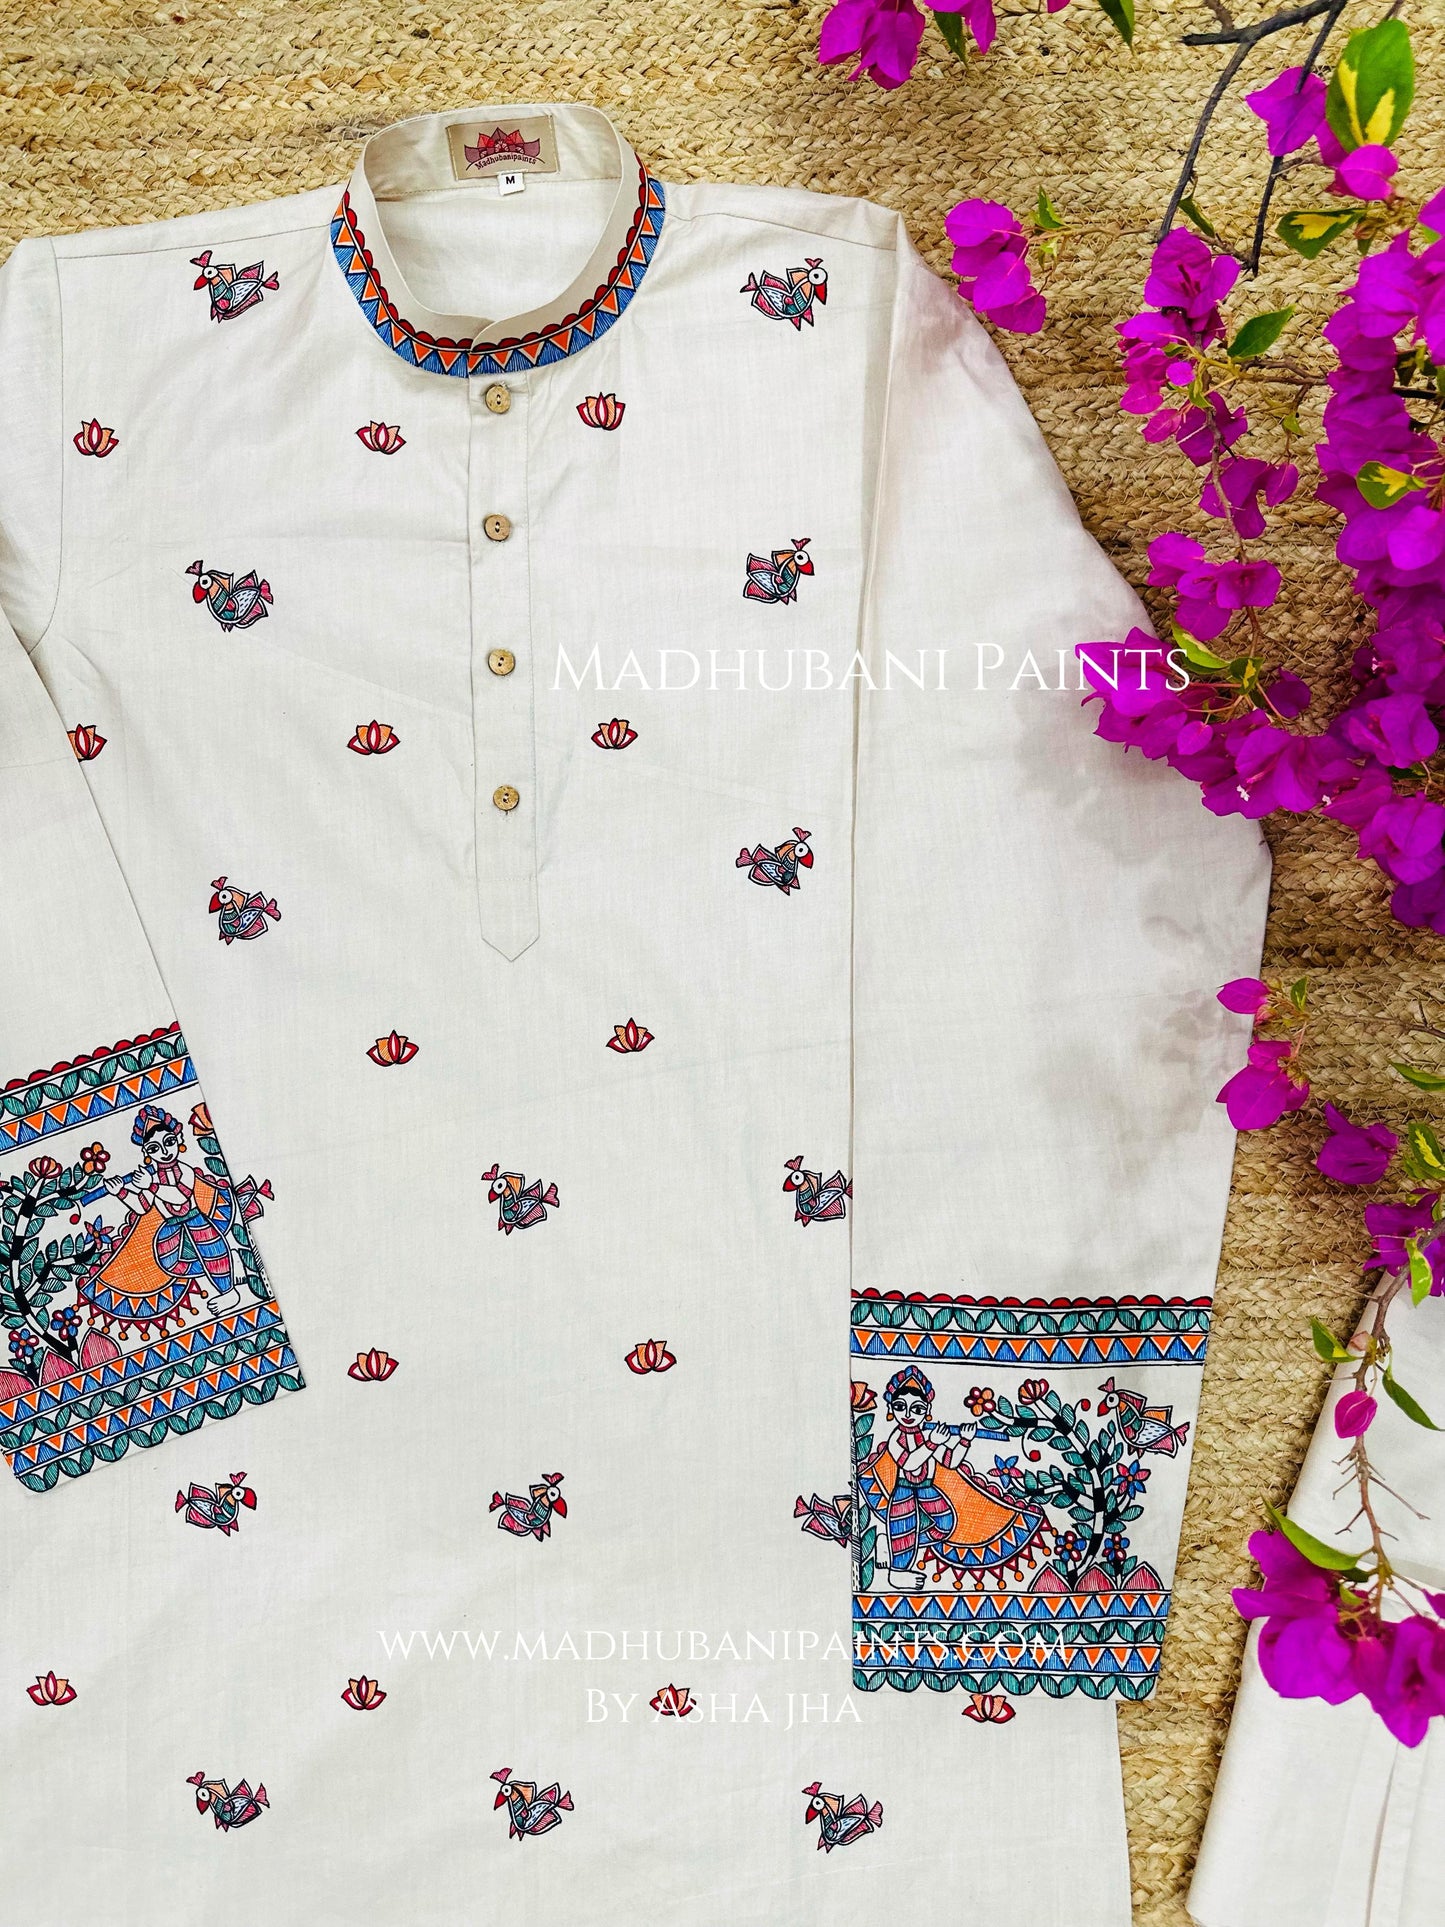 Radha Krishna Men’s Hand-painted Handloom Cotton Kurta